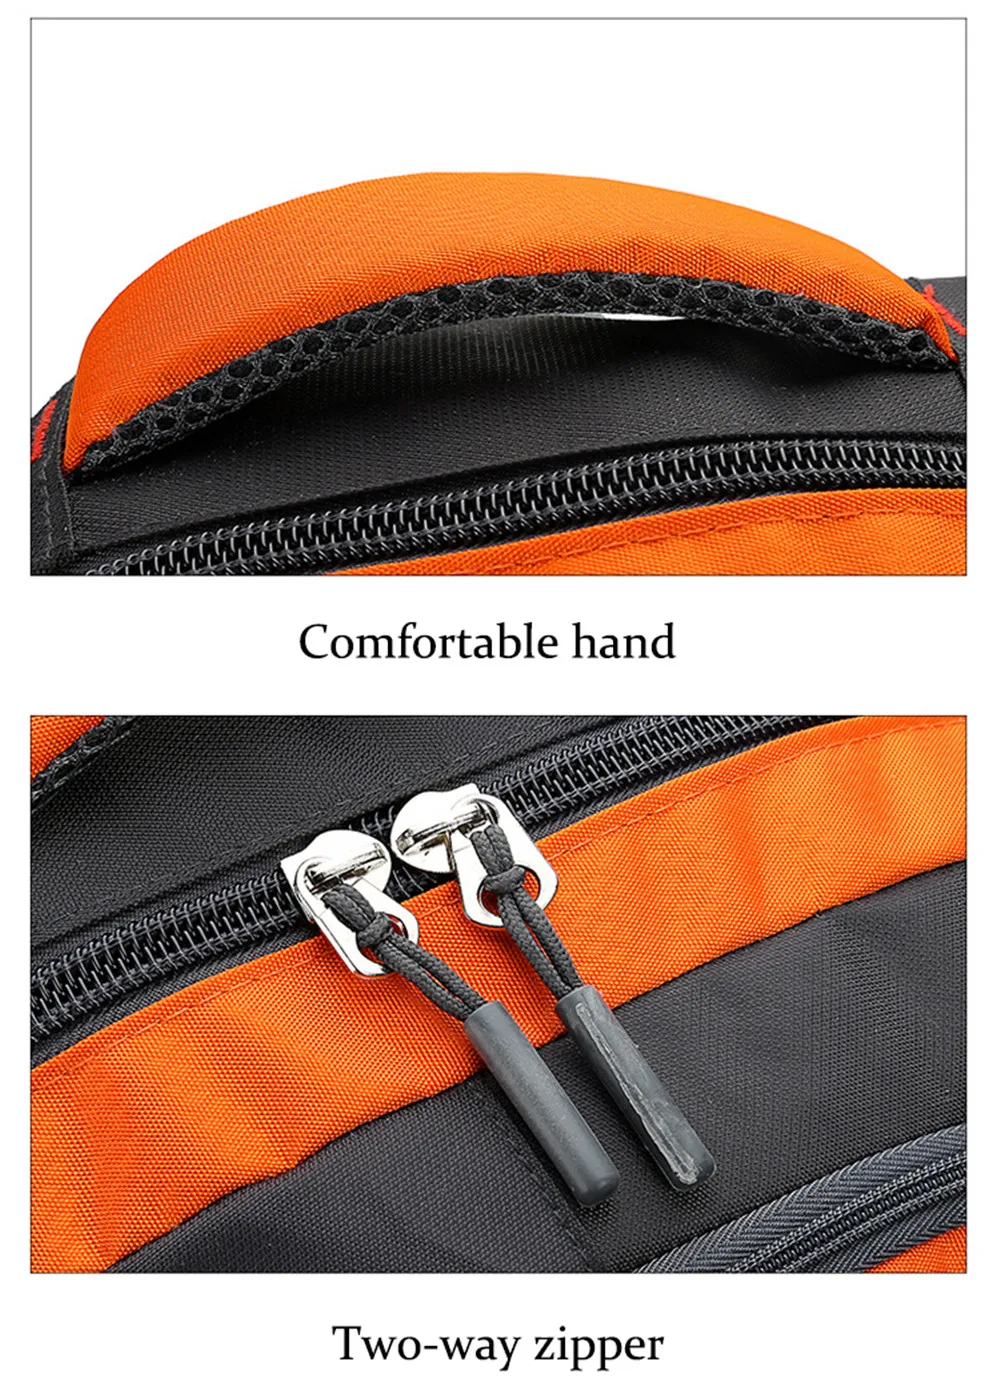 56-75L Спорт на открытом воздухе двойная сумка рюкзак для путешествий мужской водонепроницаемый большой емкости рюкзак для альпинизма 1028